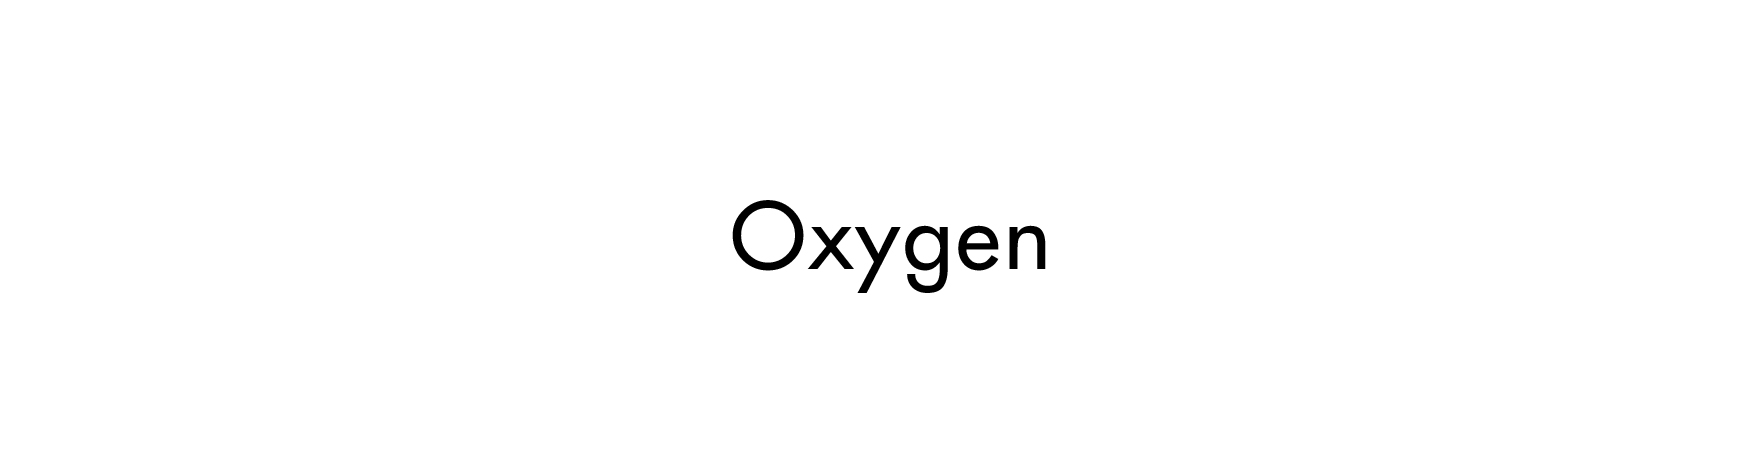 اوكسجين